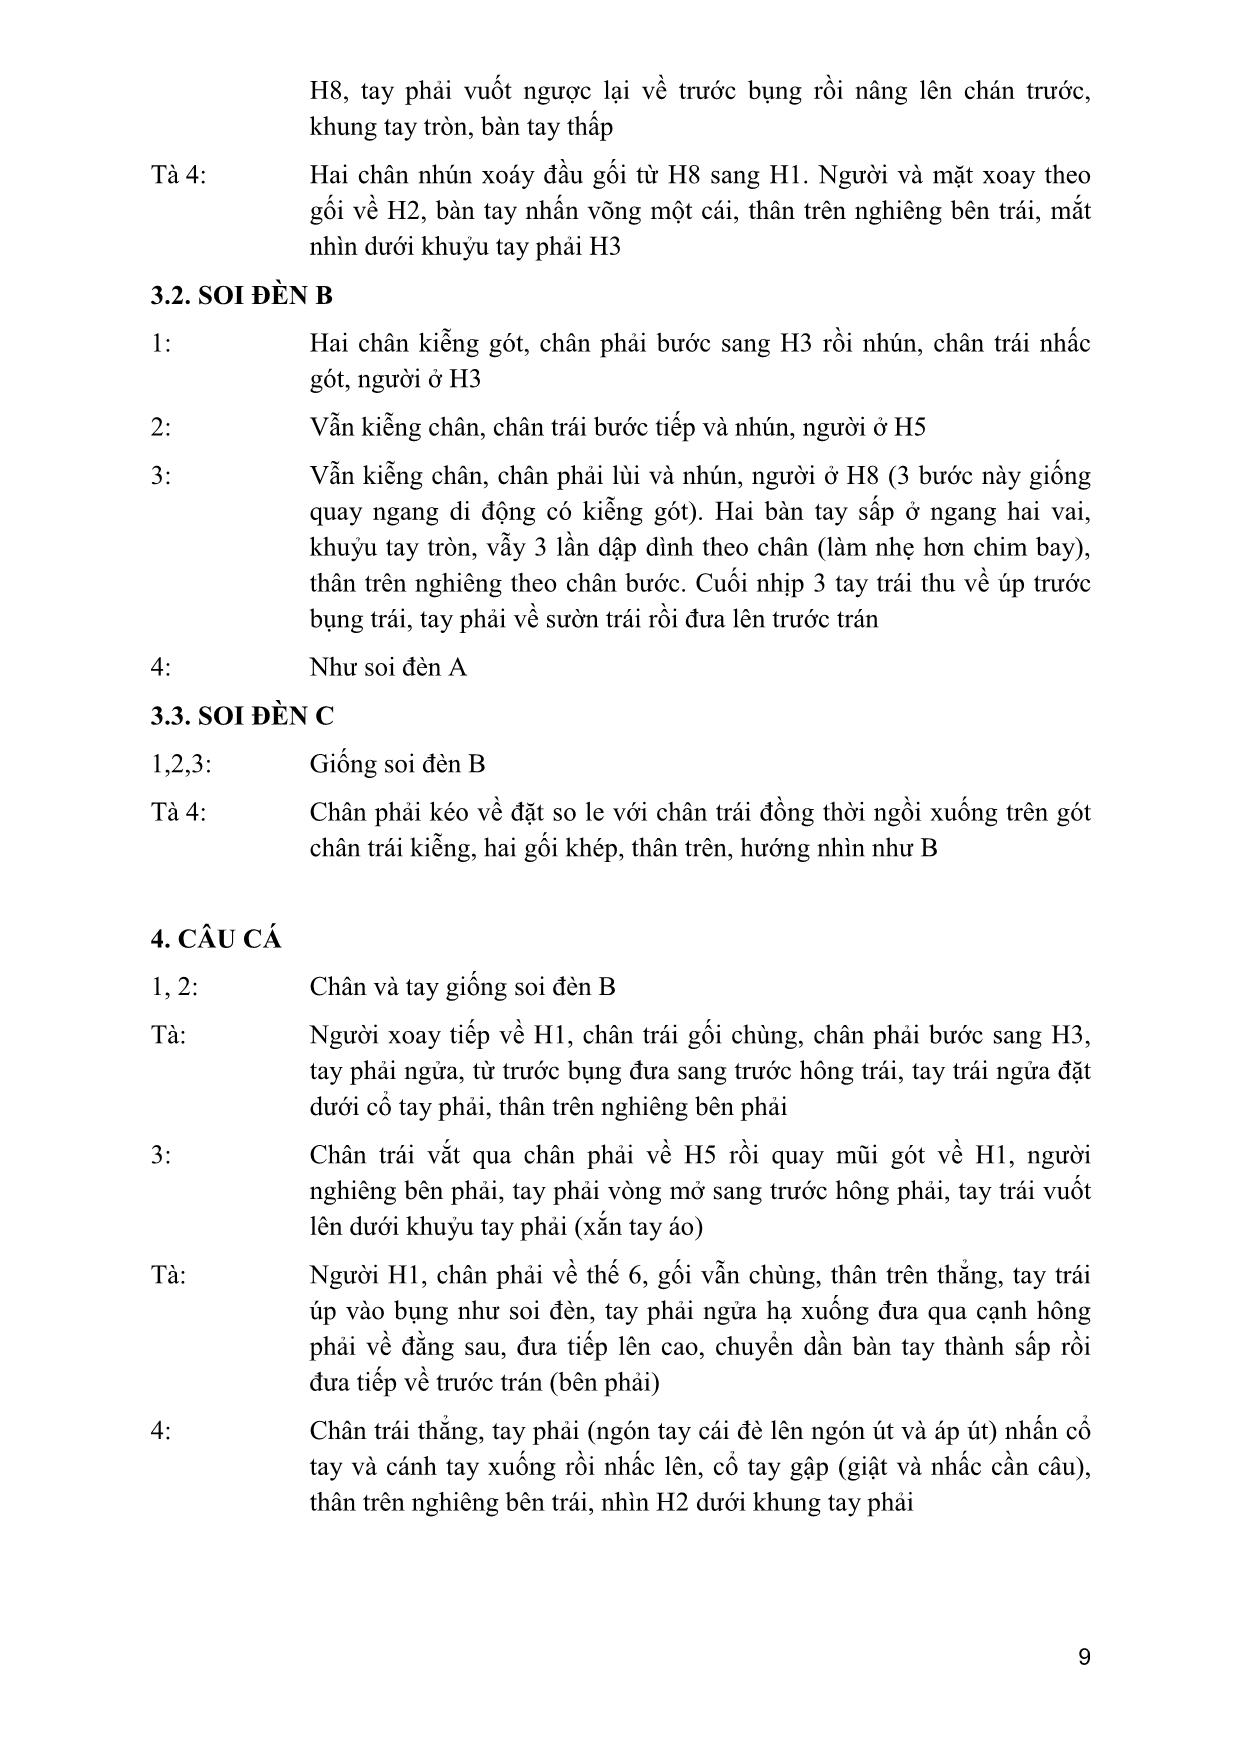 Giáo trình Múa dân gian dân tộc Việt Nam 2 trang 8